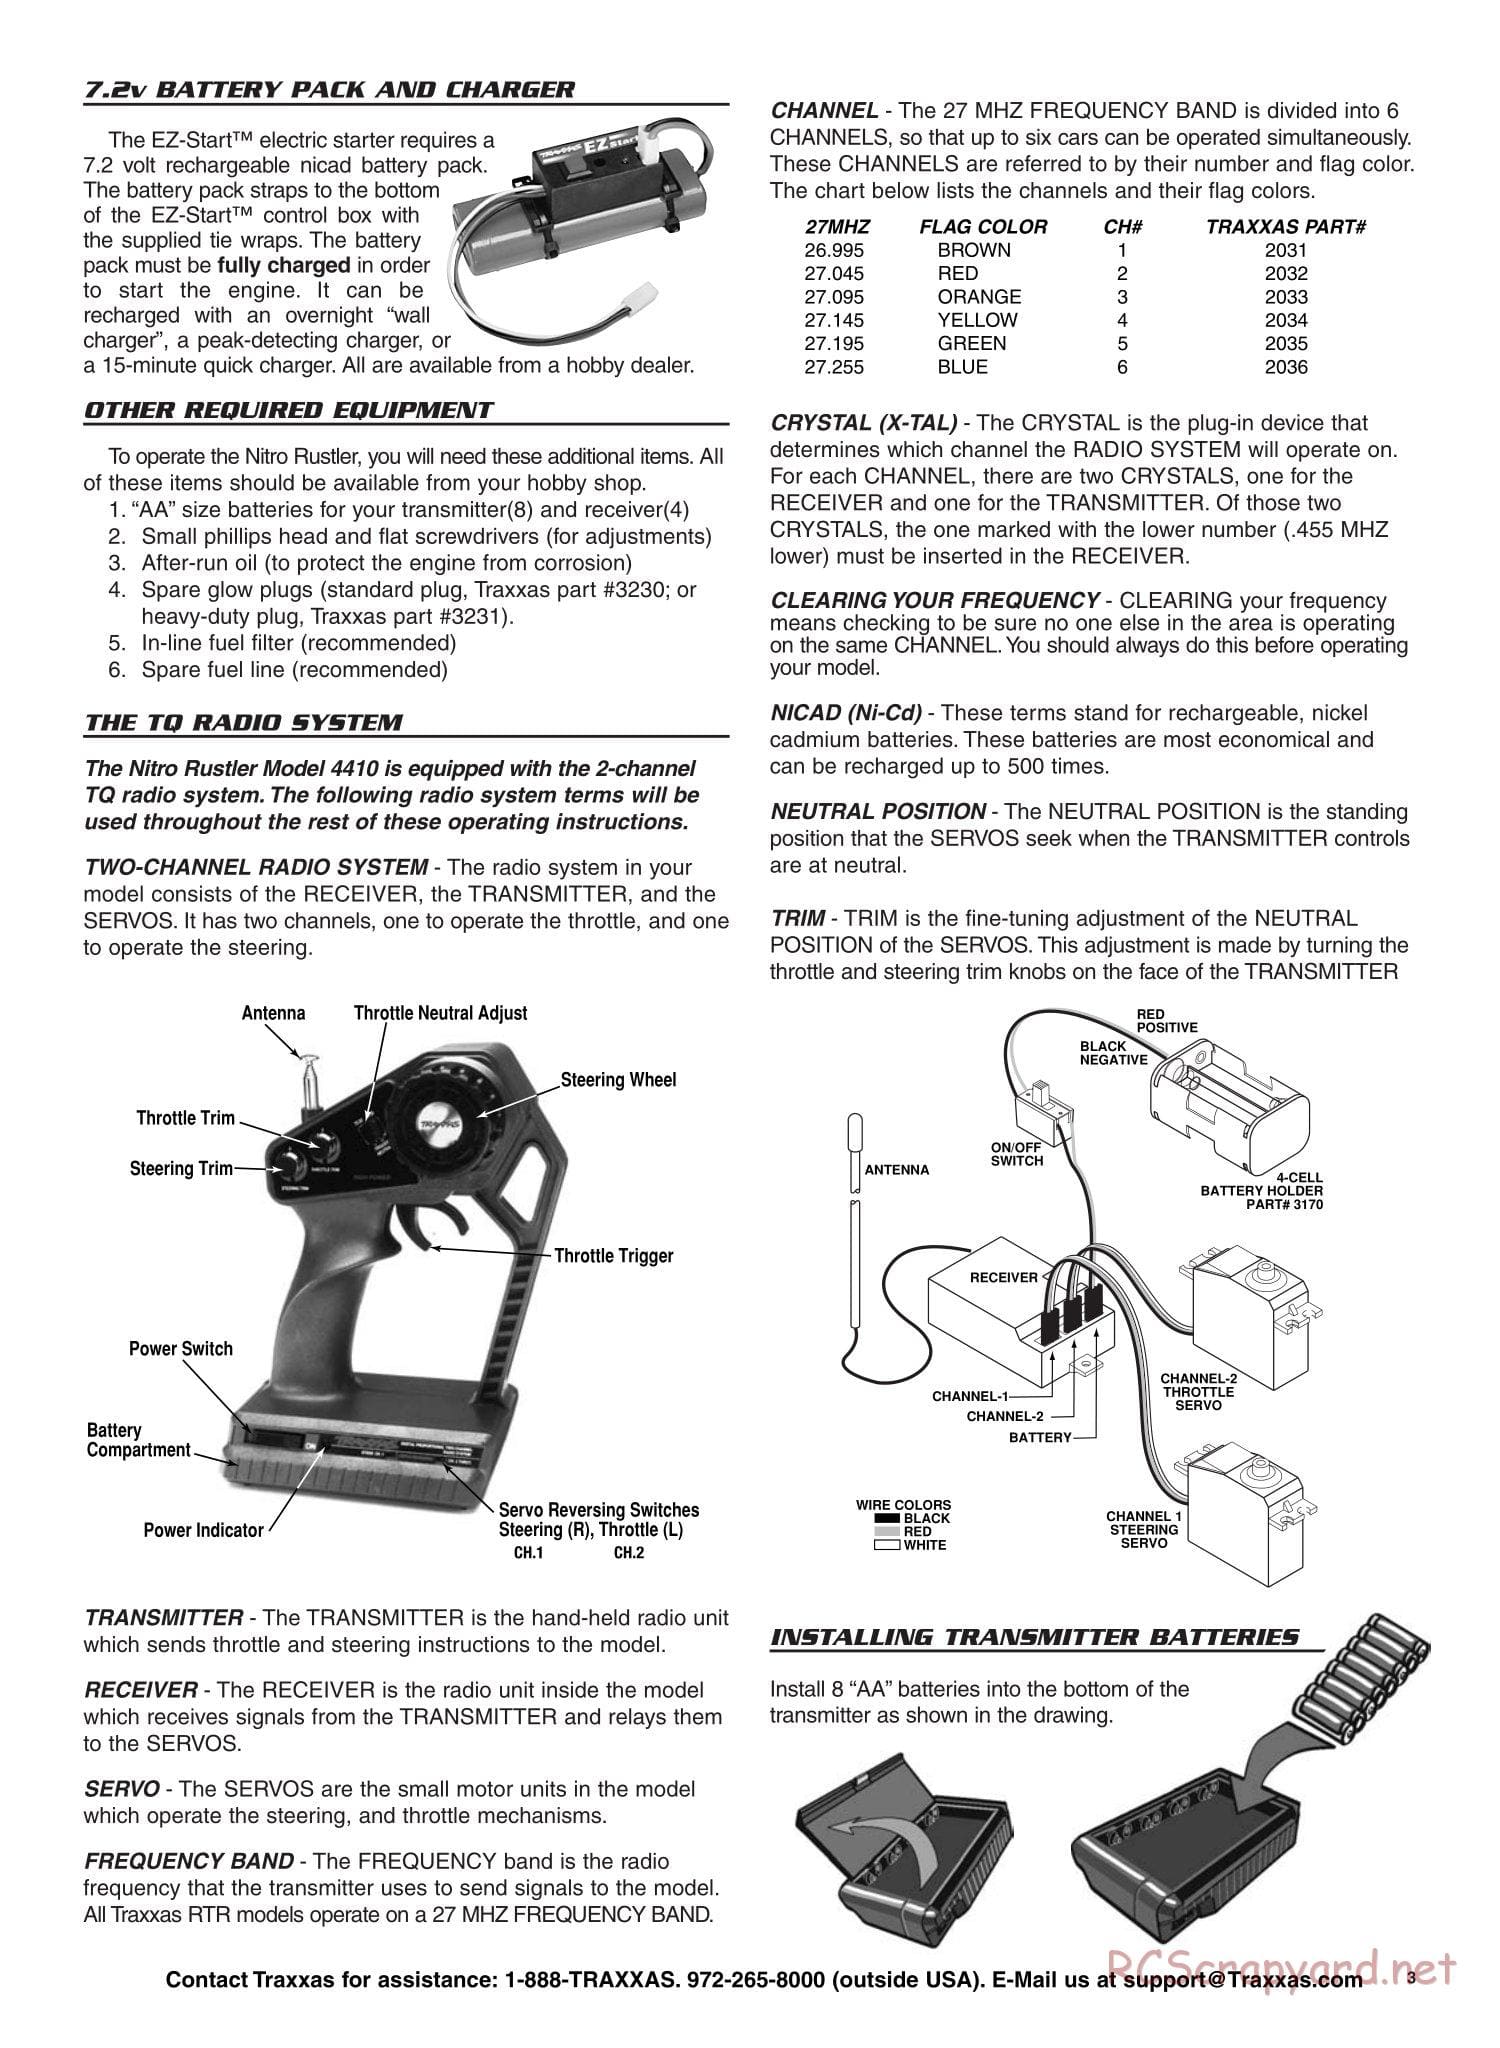 Traxxas - Nitro Rustler - Manual - Page 3